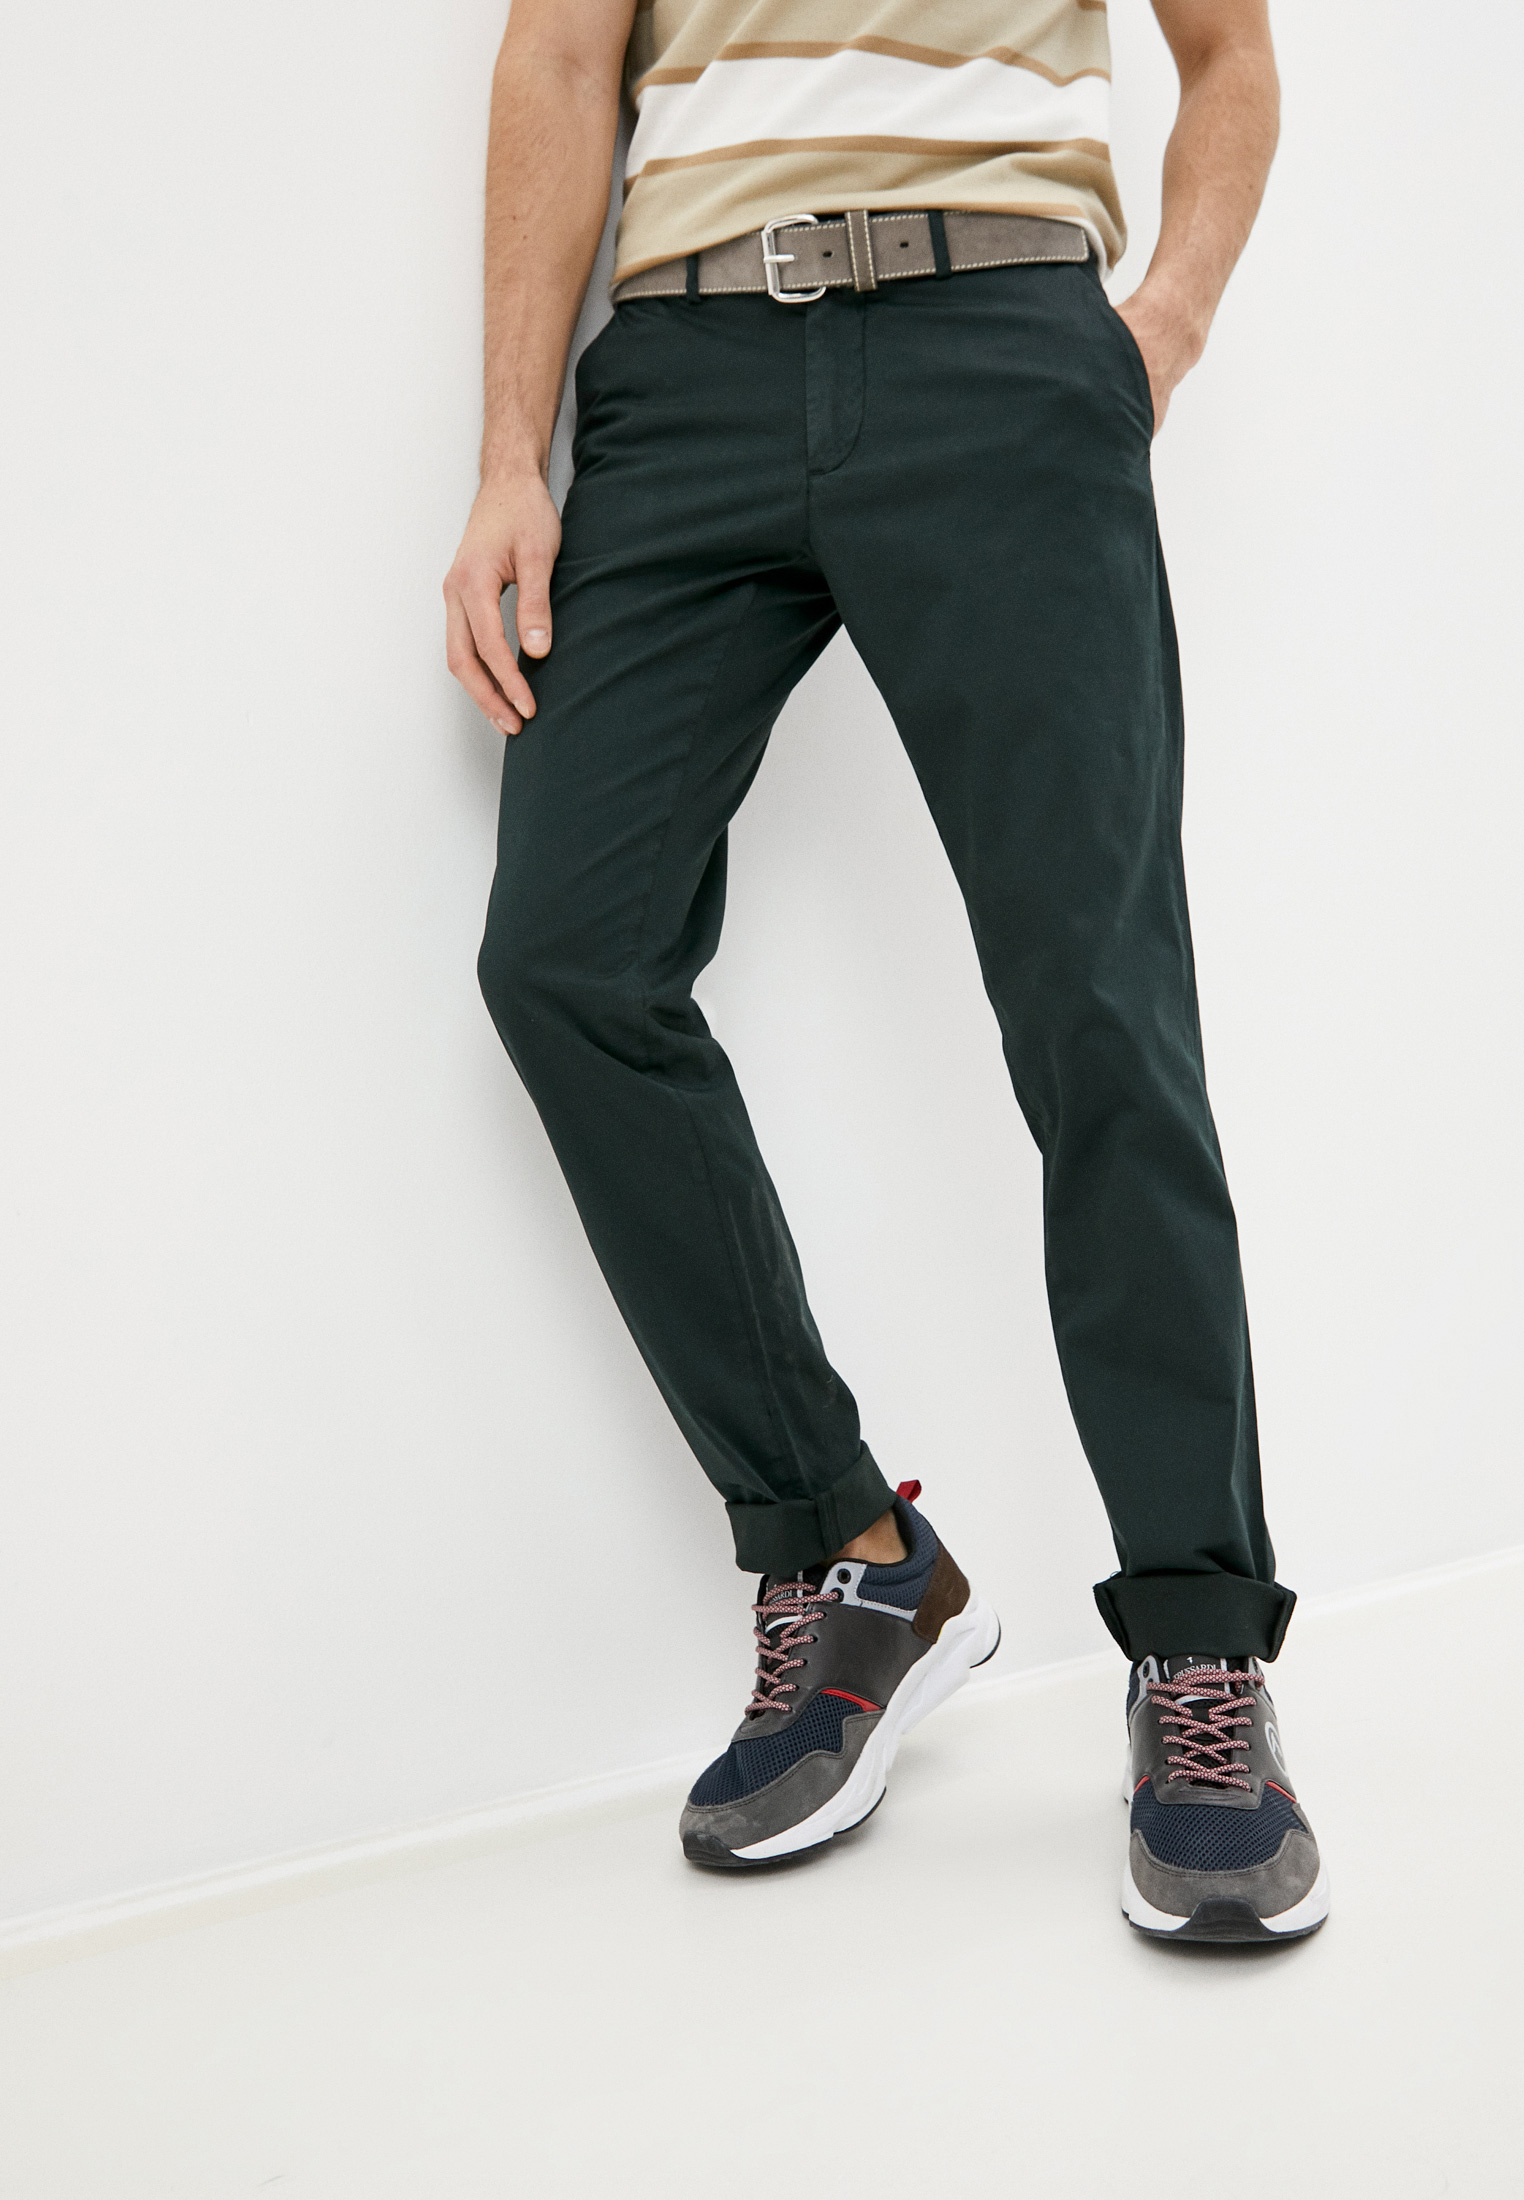 Мужские повседневные брюки Trussardi (Труссарди) 52P00000-1T005016: изображение 1